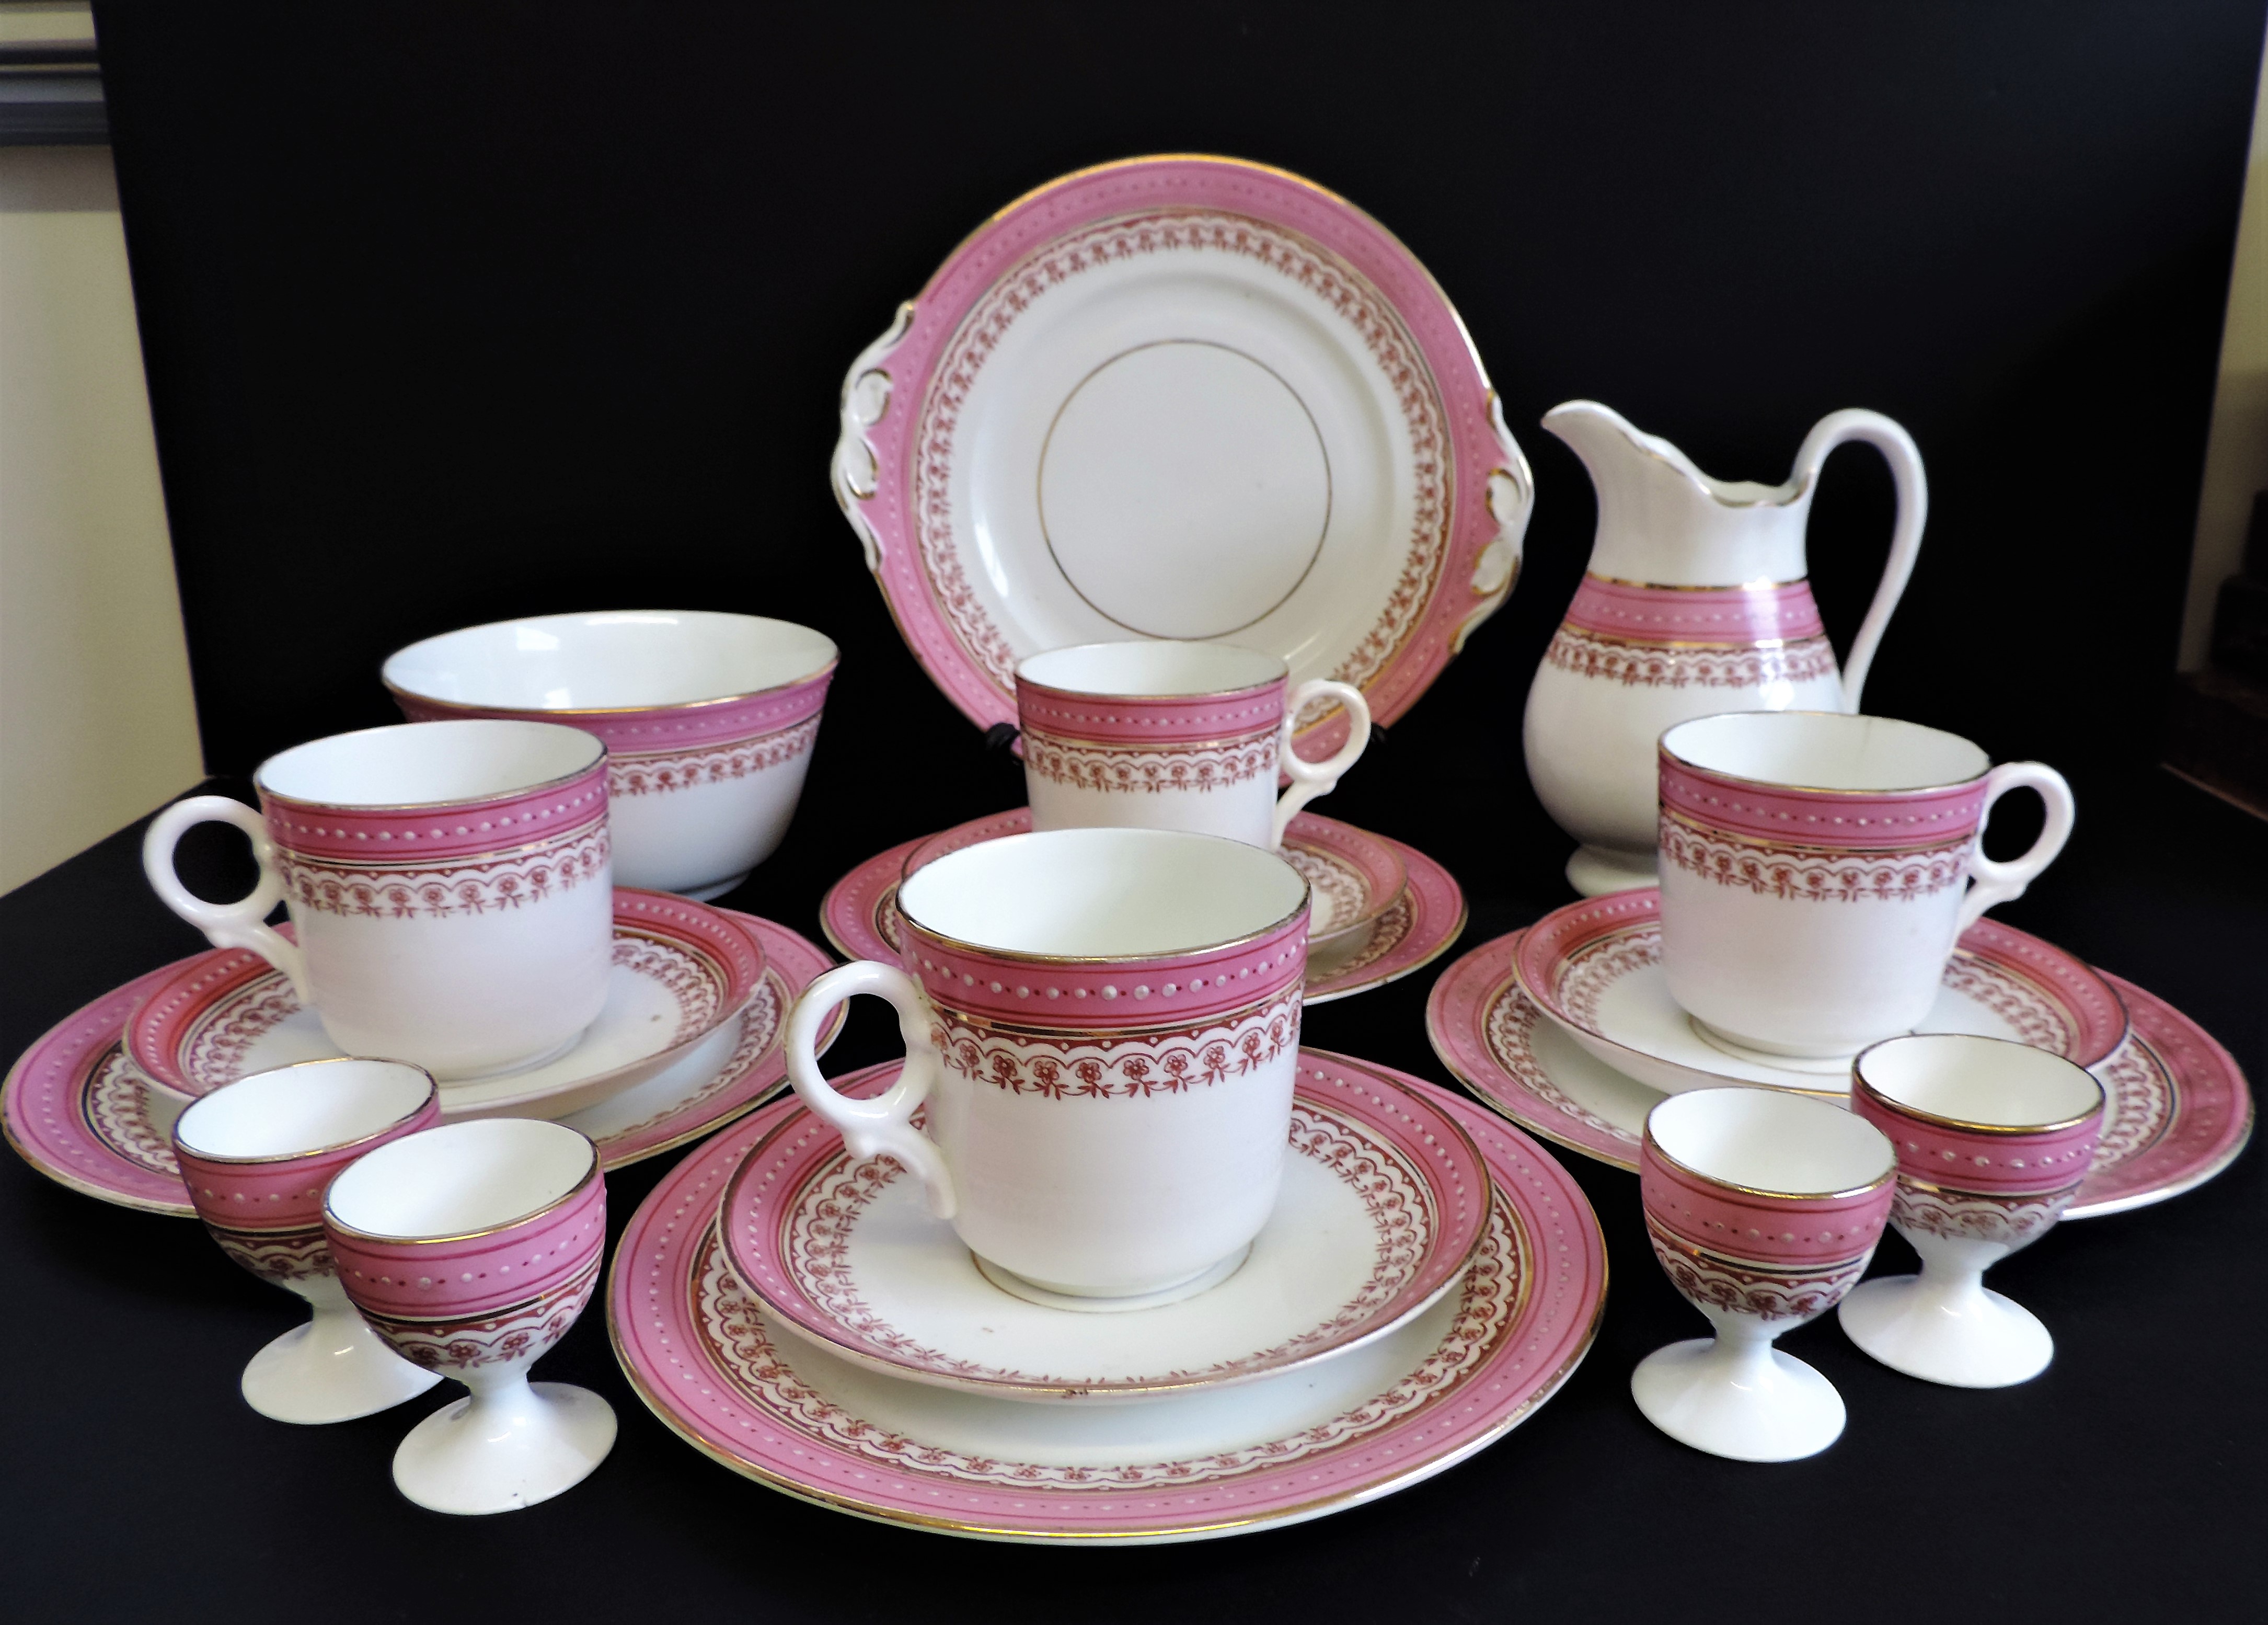 Vintage 19 piece Porcelain Breakfast/Tea Set for 4 People